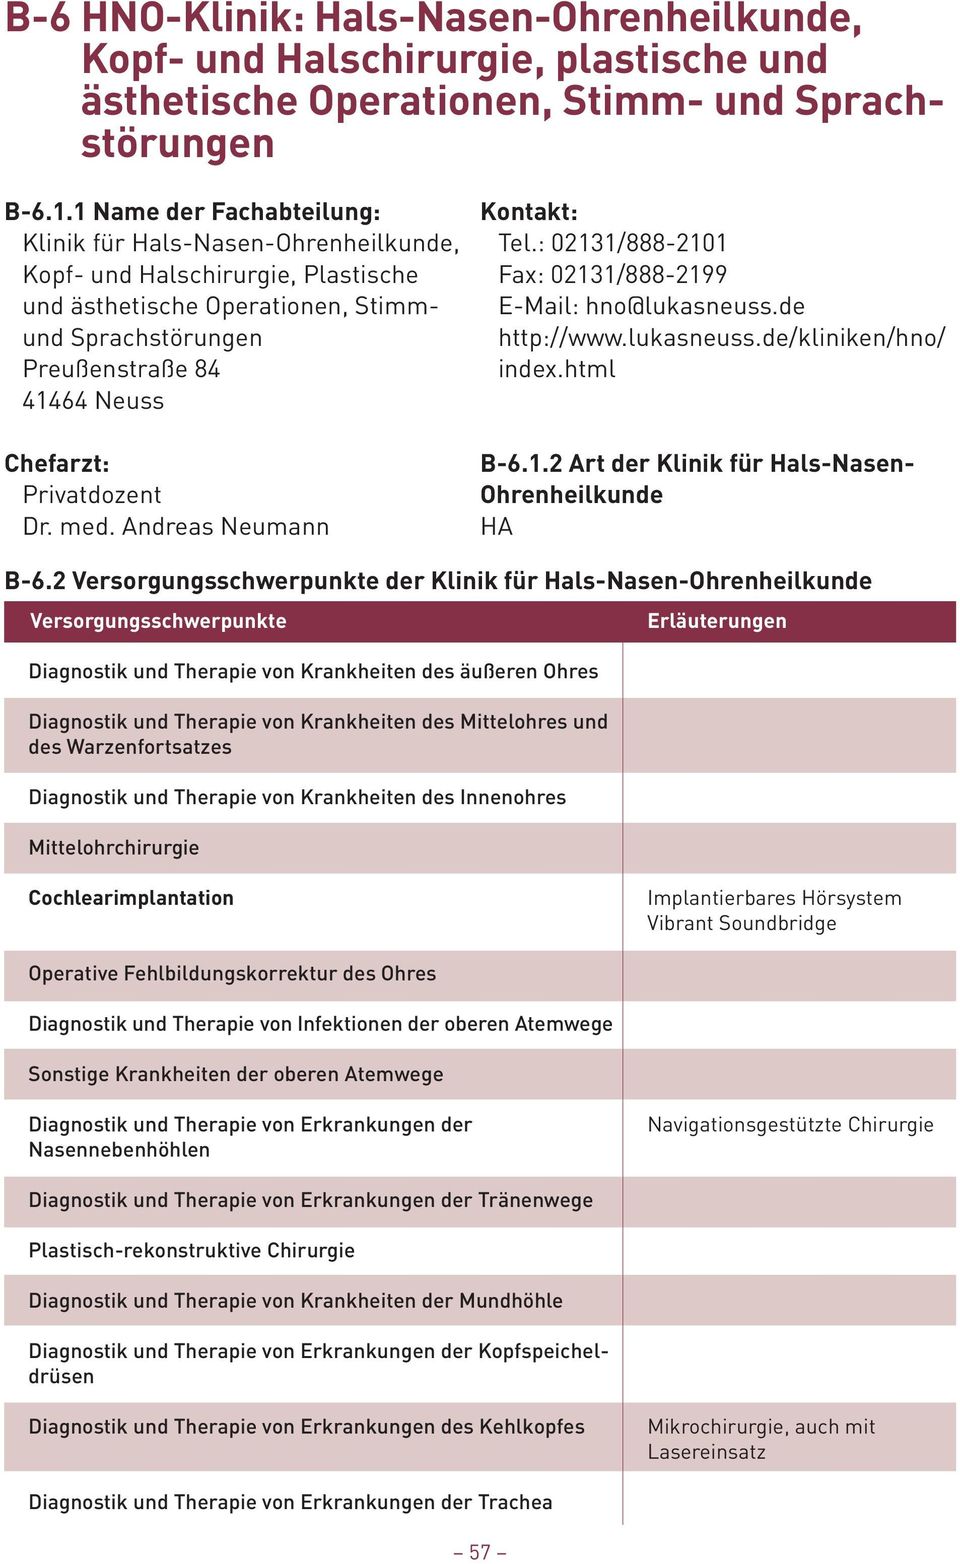 : 02131/888-2101 Kopf- und Halschirurgie, Plastische Fax: 02131/888-2199 und ästhetische Operationen, Stimm- E-Mail: hno@lukasneuss.de und Sprachstörungen http://www.lukasneuss.de/kliniken/hno/ Preußenstraße 84 index.